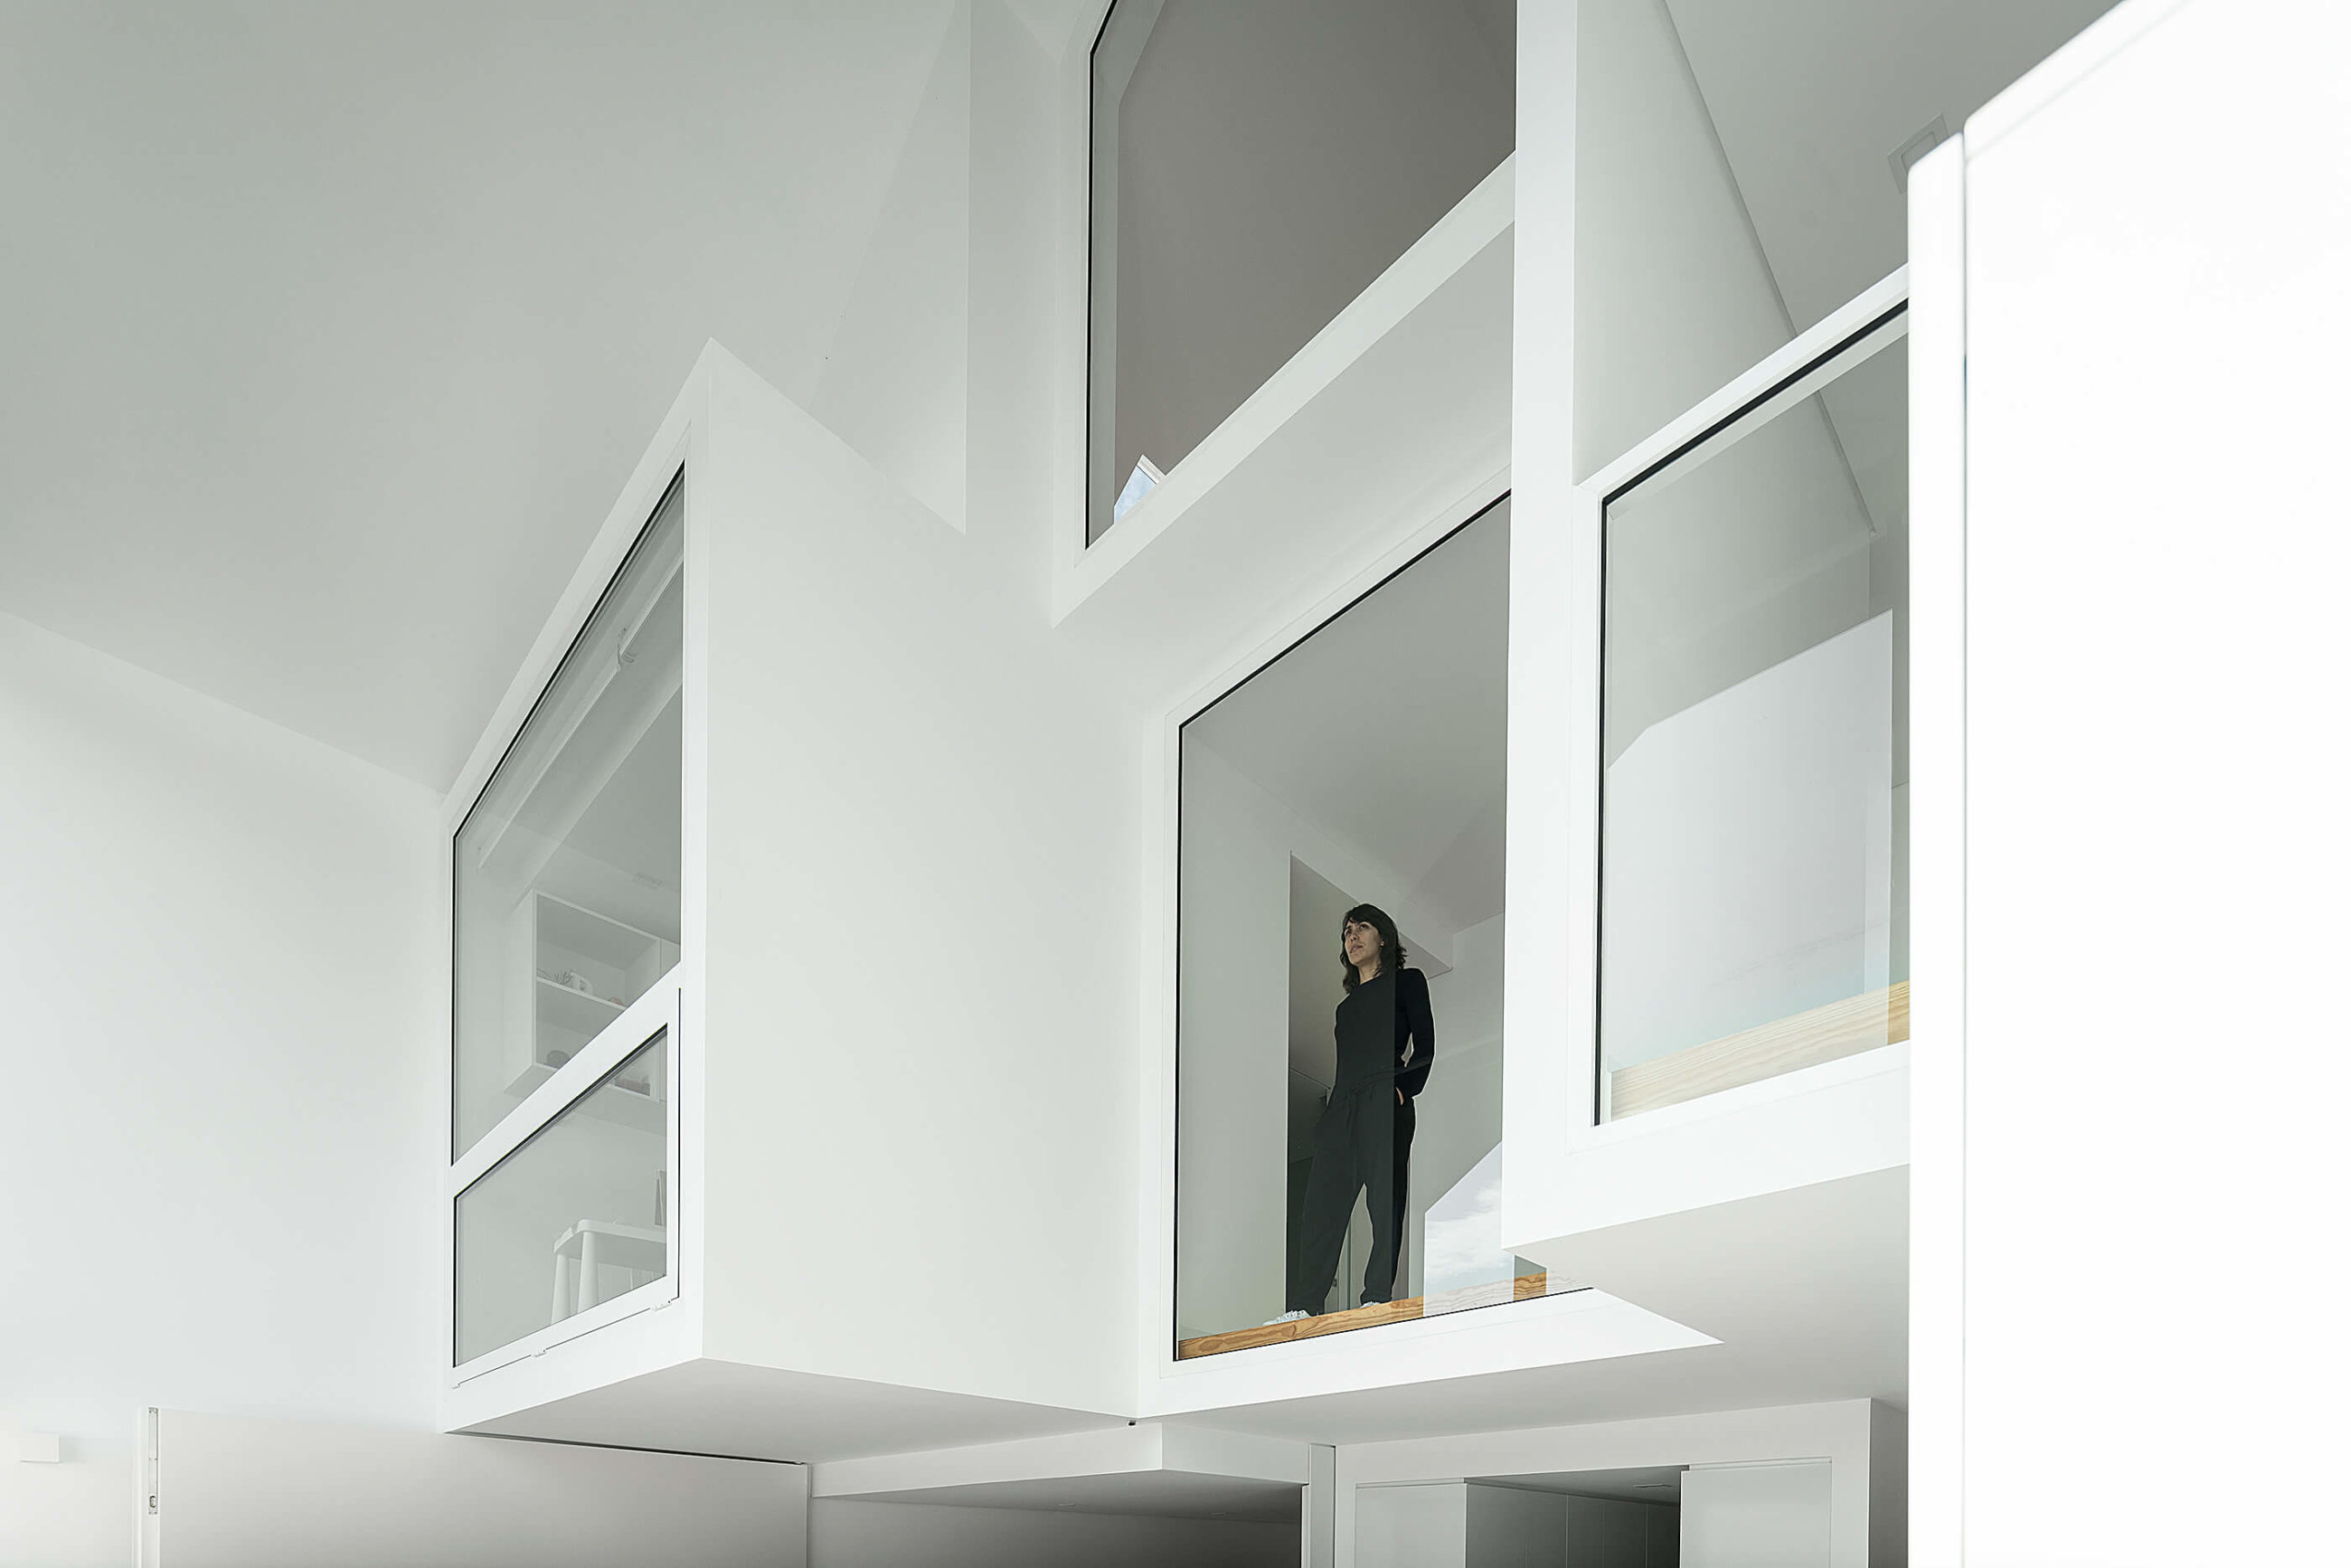 Reportagem Fotografia de arquitectura portuguesa fotografo Ivo tavares studio projecto reabilitação casa do arco do atelier Frari